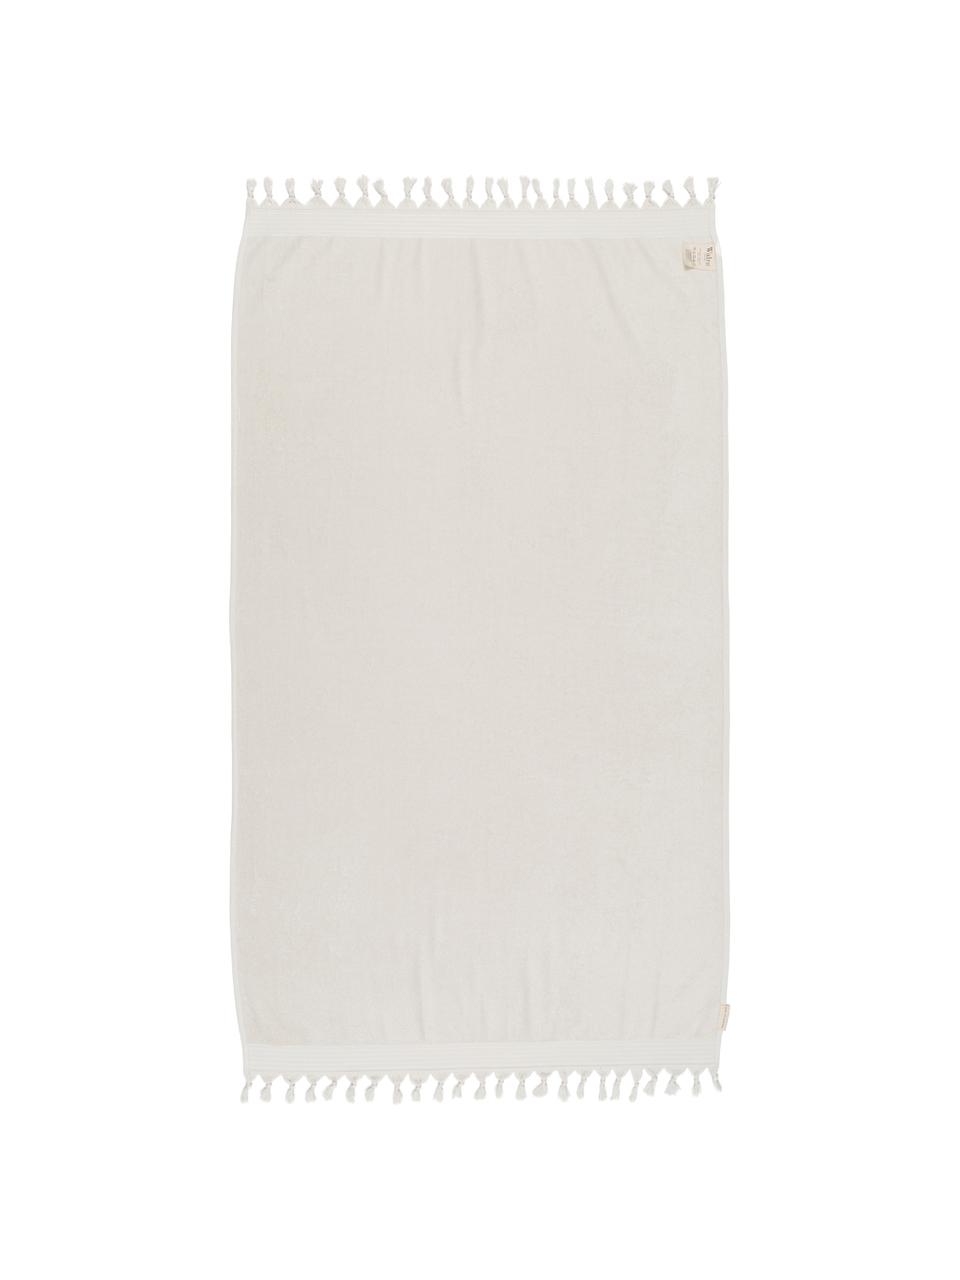 Hamamtuch Soft Cotton mit Frottee-Rückseite, Rückseite: Frottee, Hellbeige, Weiss, 100 x 180 cm